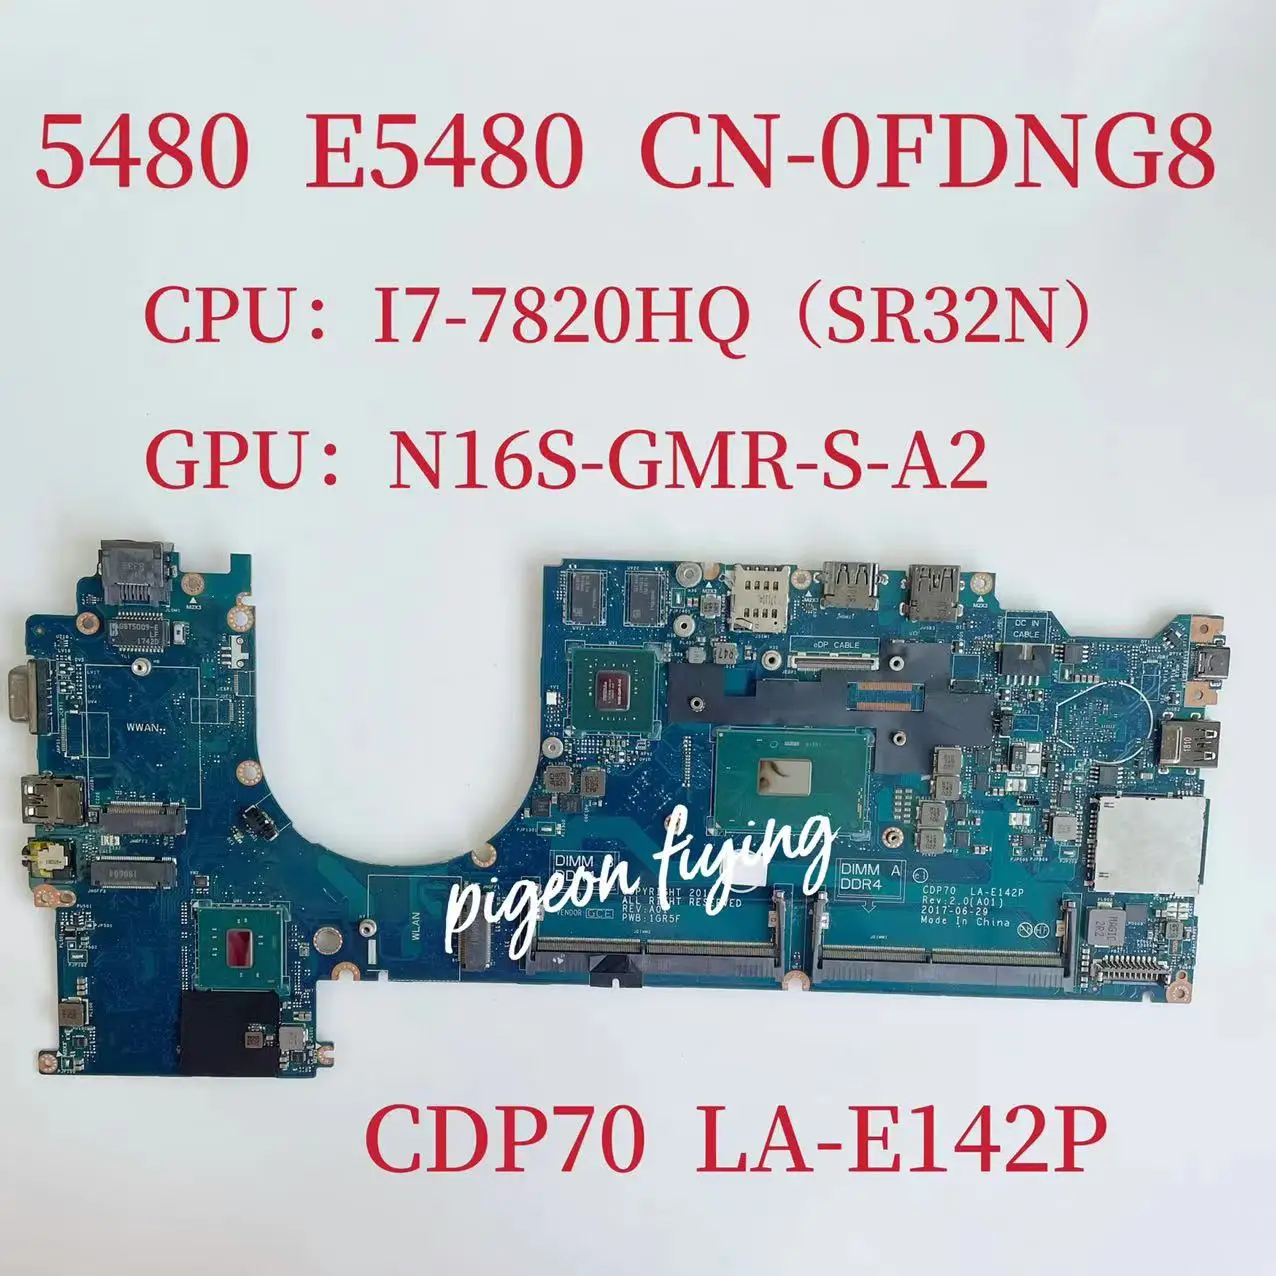 CDP70 LA-E142P дънна Платка за лаптоп Dell Latitude 5480 дънна Платка Процесор: I7-7820HQ Графичен процесор: N16S-GMR-S-A2 2G CN -0FDNG8 0FDNG8 FDNG8